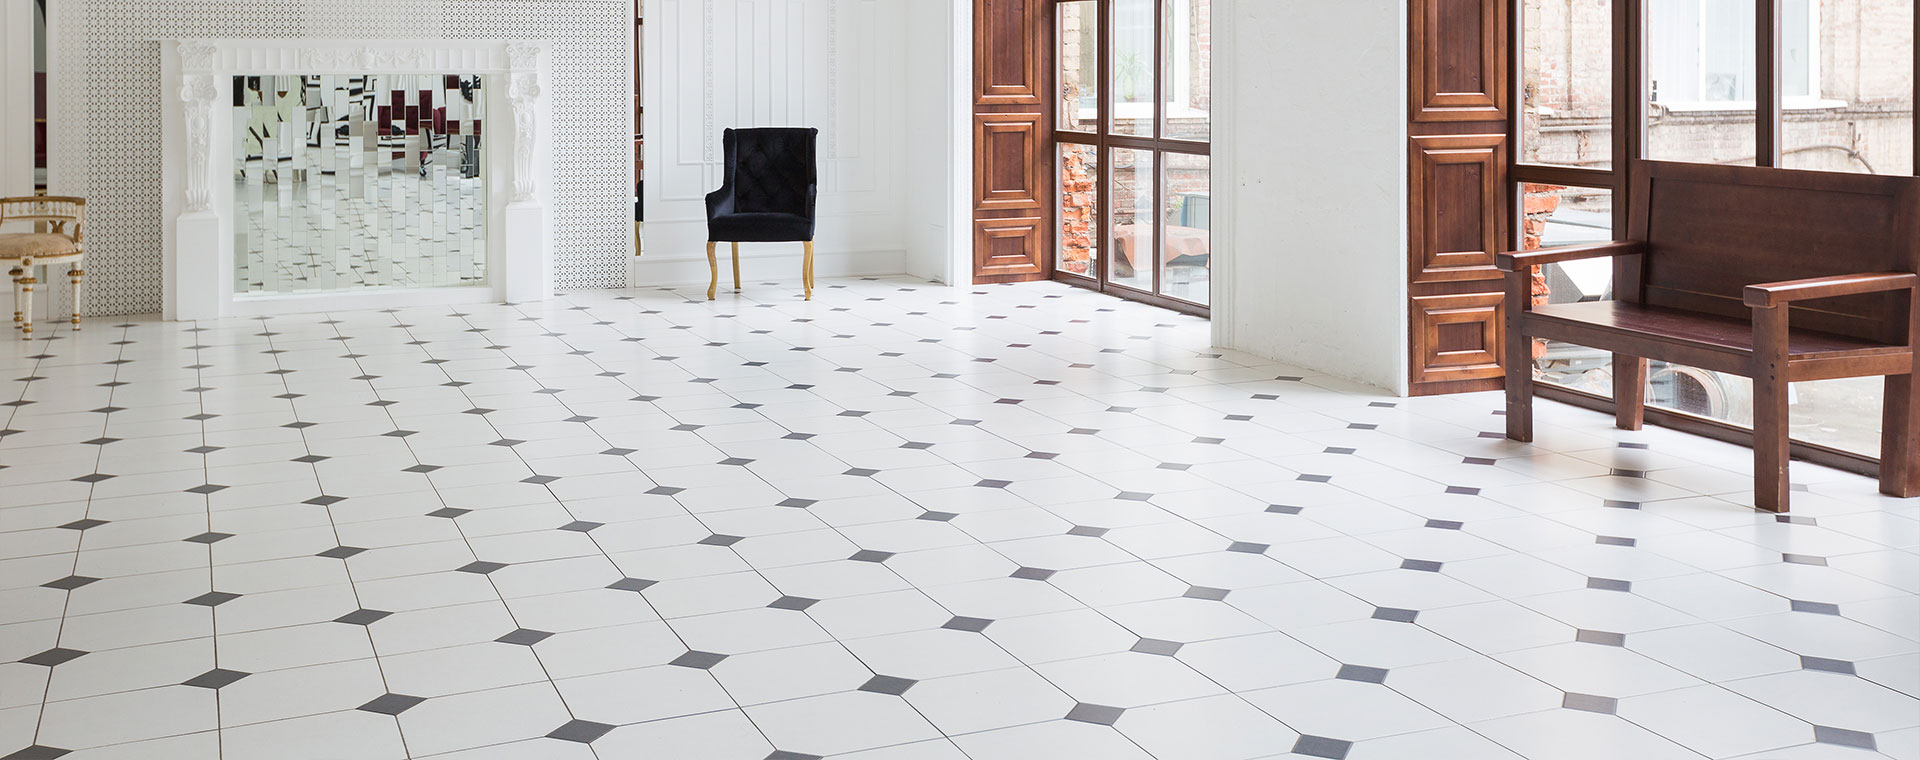 mosaic floor tiles for living room